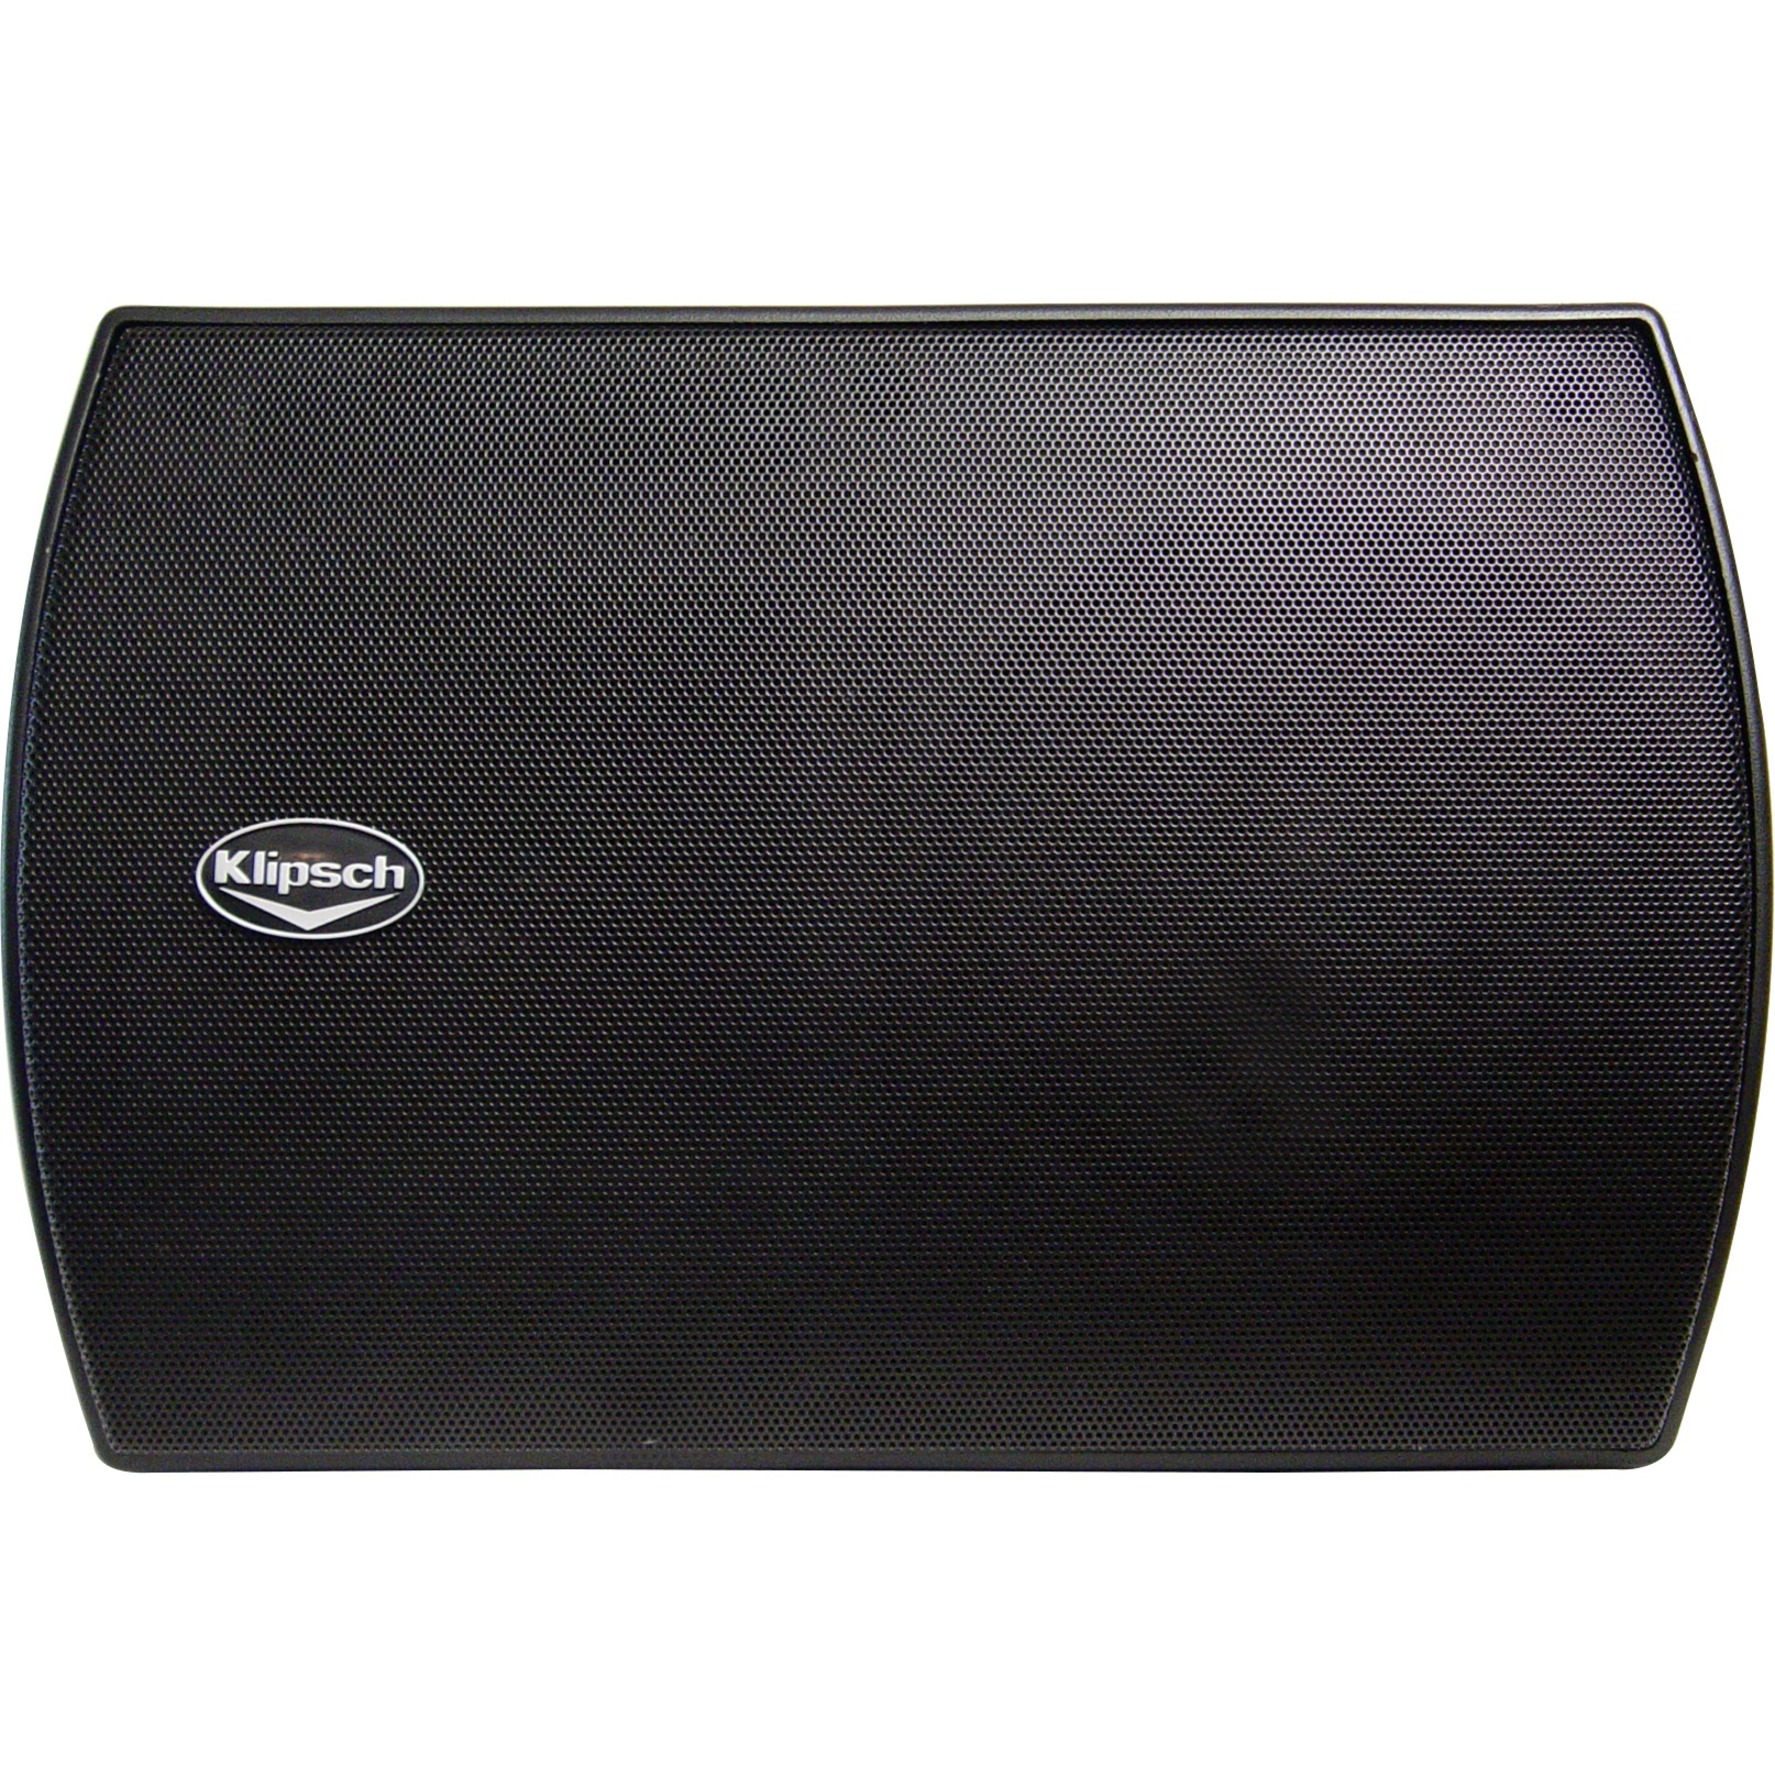 Klipsch CA-525T 2-way Indoor/Outdoor Speaker, 150 W RMS, Black - image 1 of 4